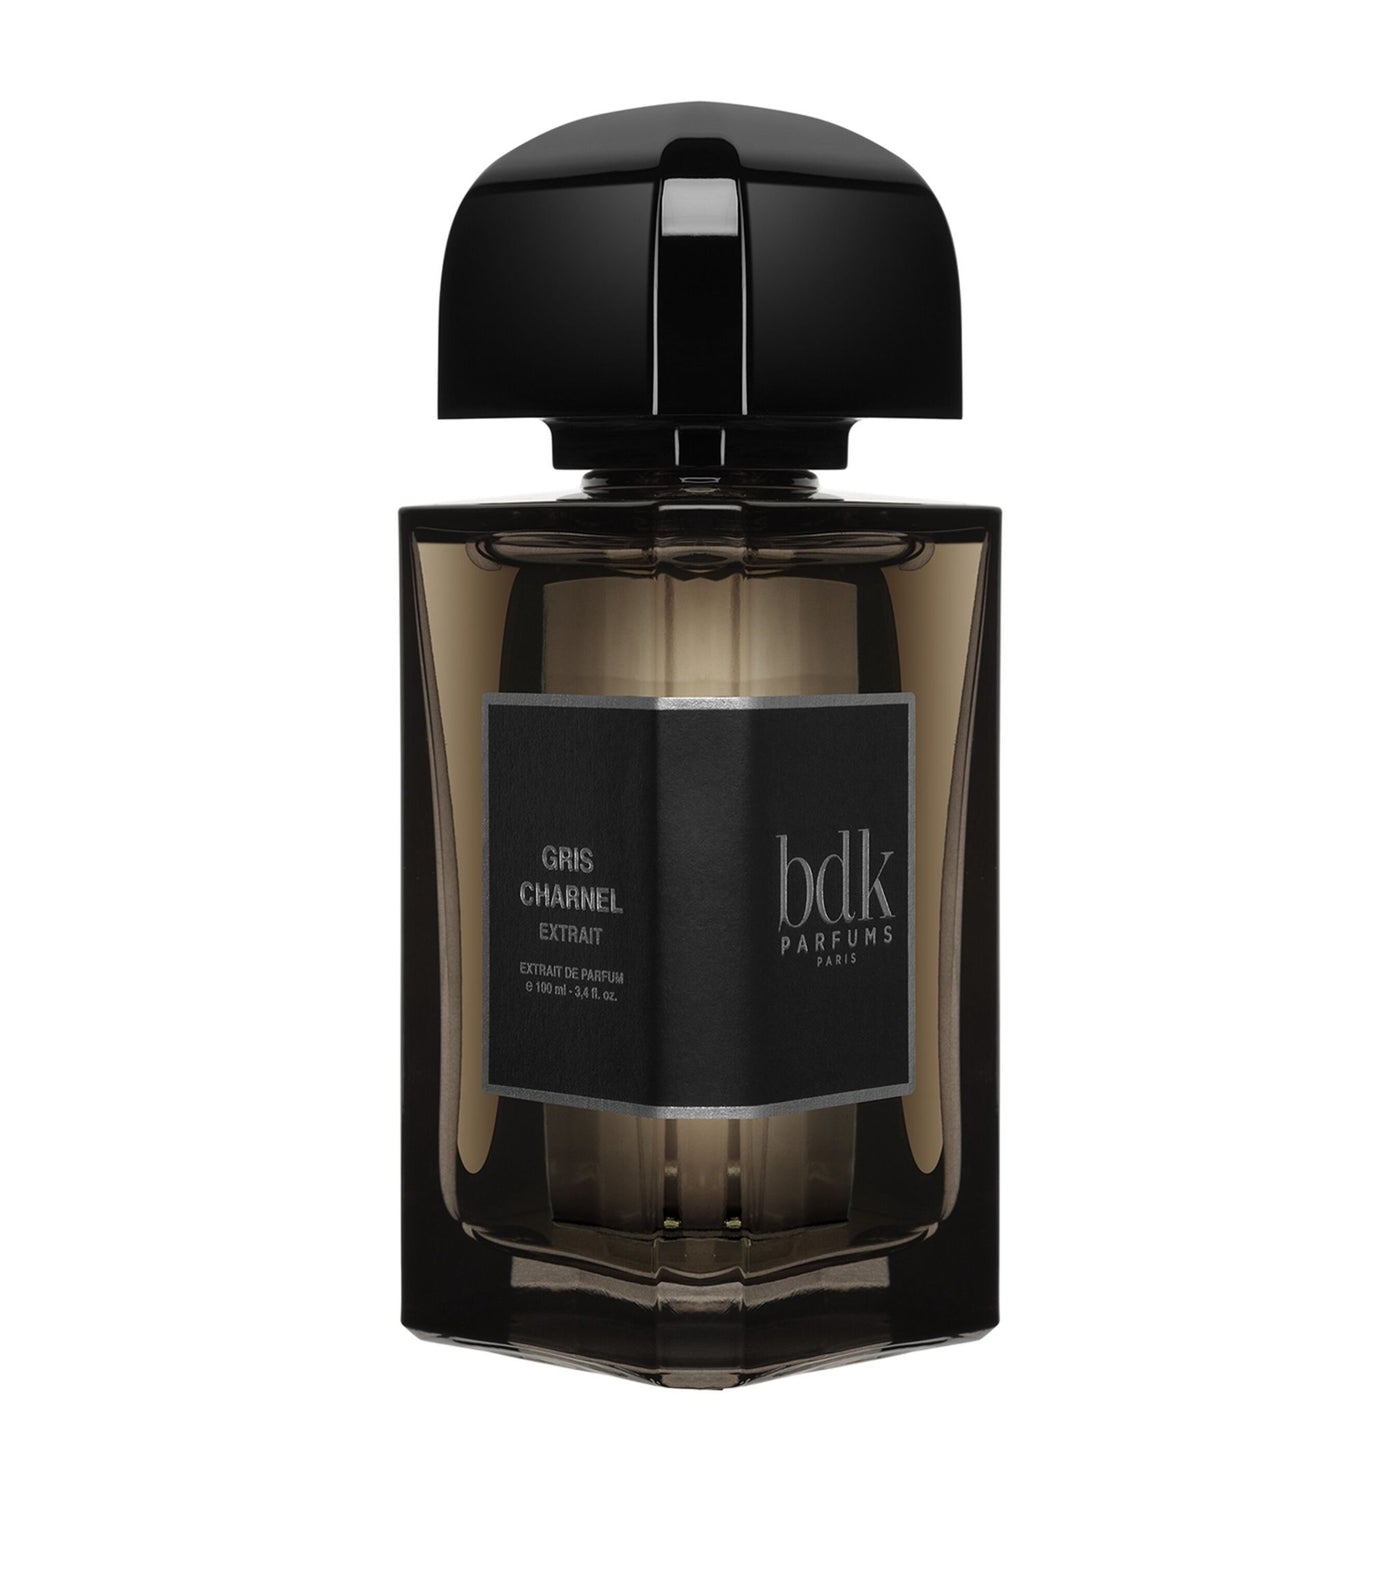 Bdk Parfums Gris Charnel For Men And Women Extrait De Parfum 100Ml